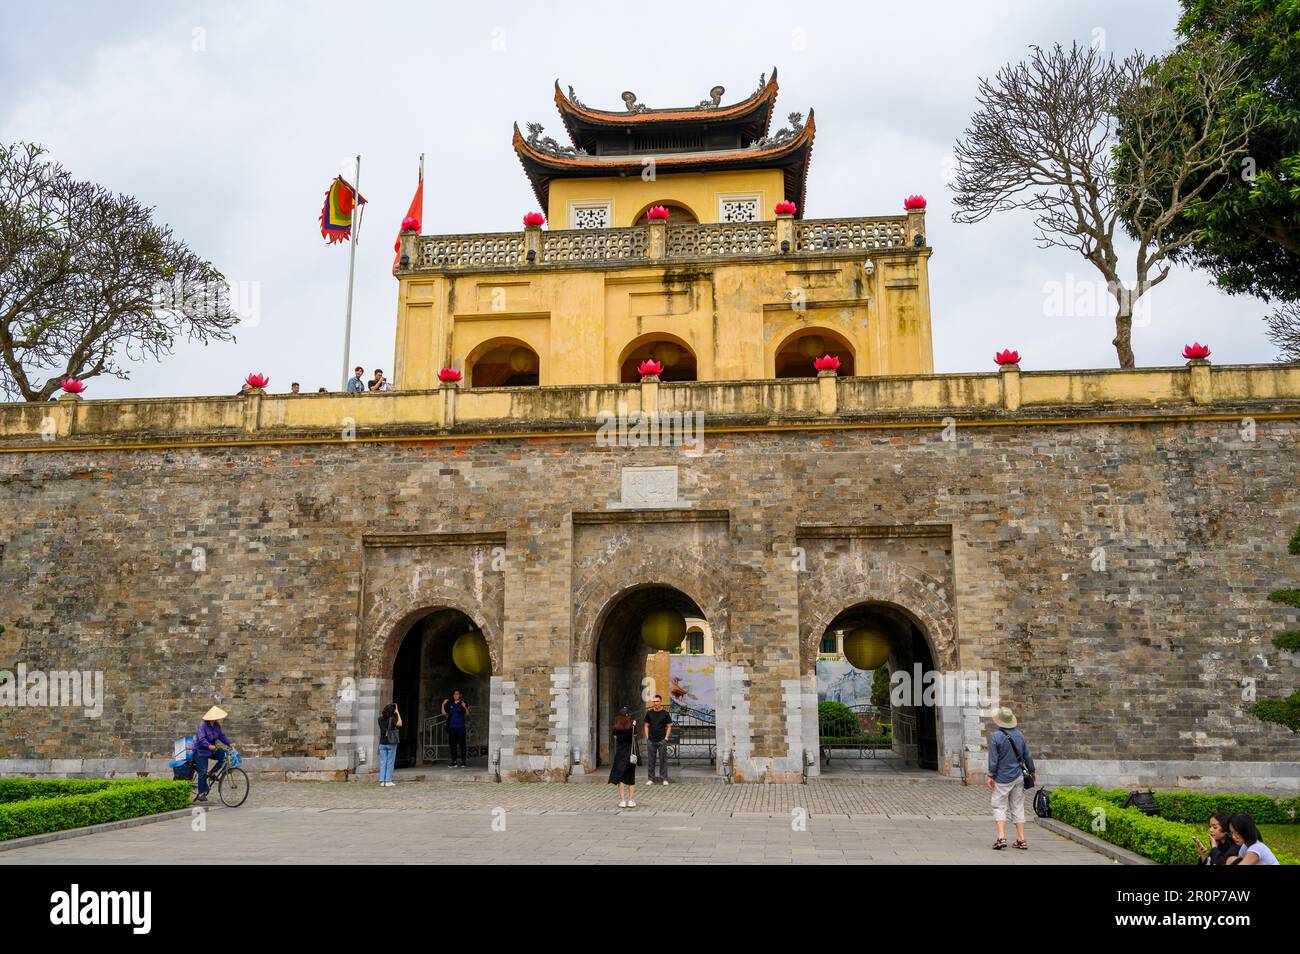 Frente del sector central del sitio de la UNESCO de la Ciudadela Imperial de Thang Long, Hanoi, Vietnam. Foto de stock